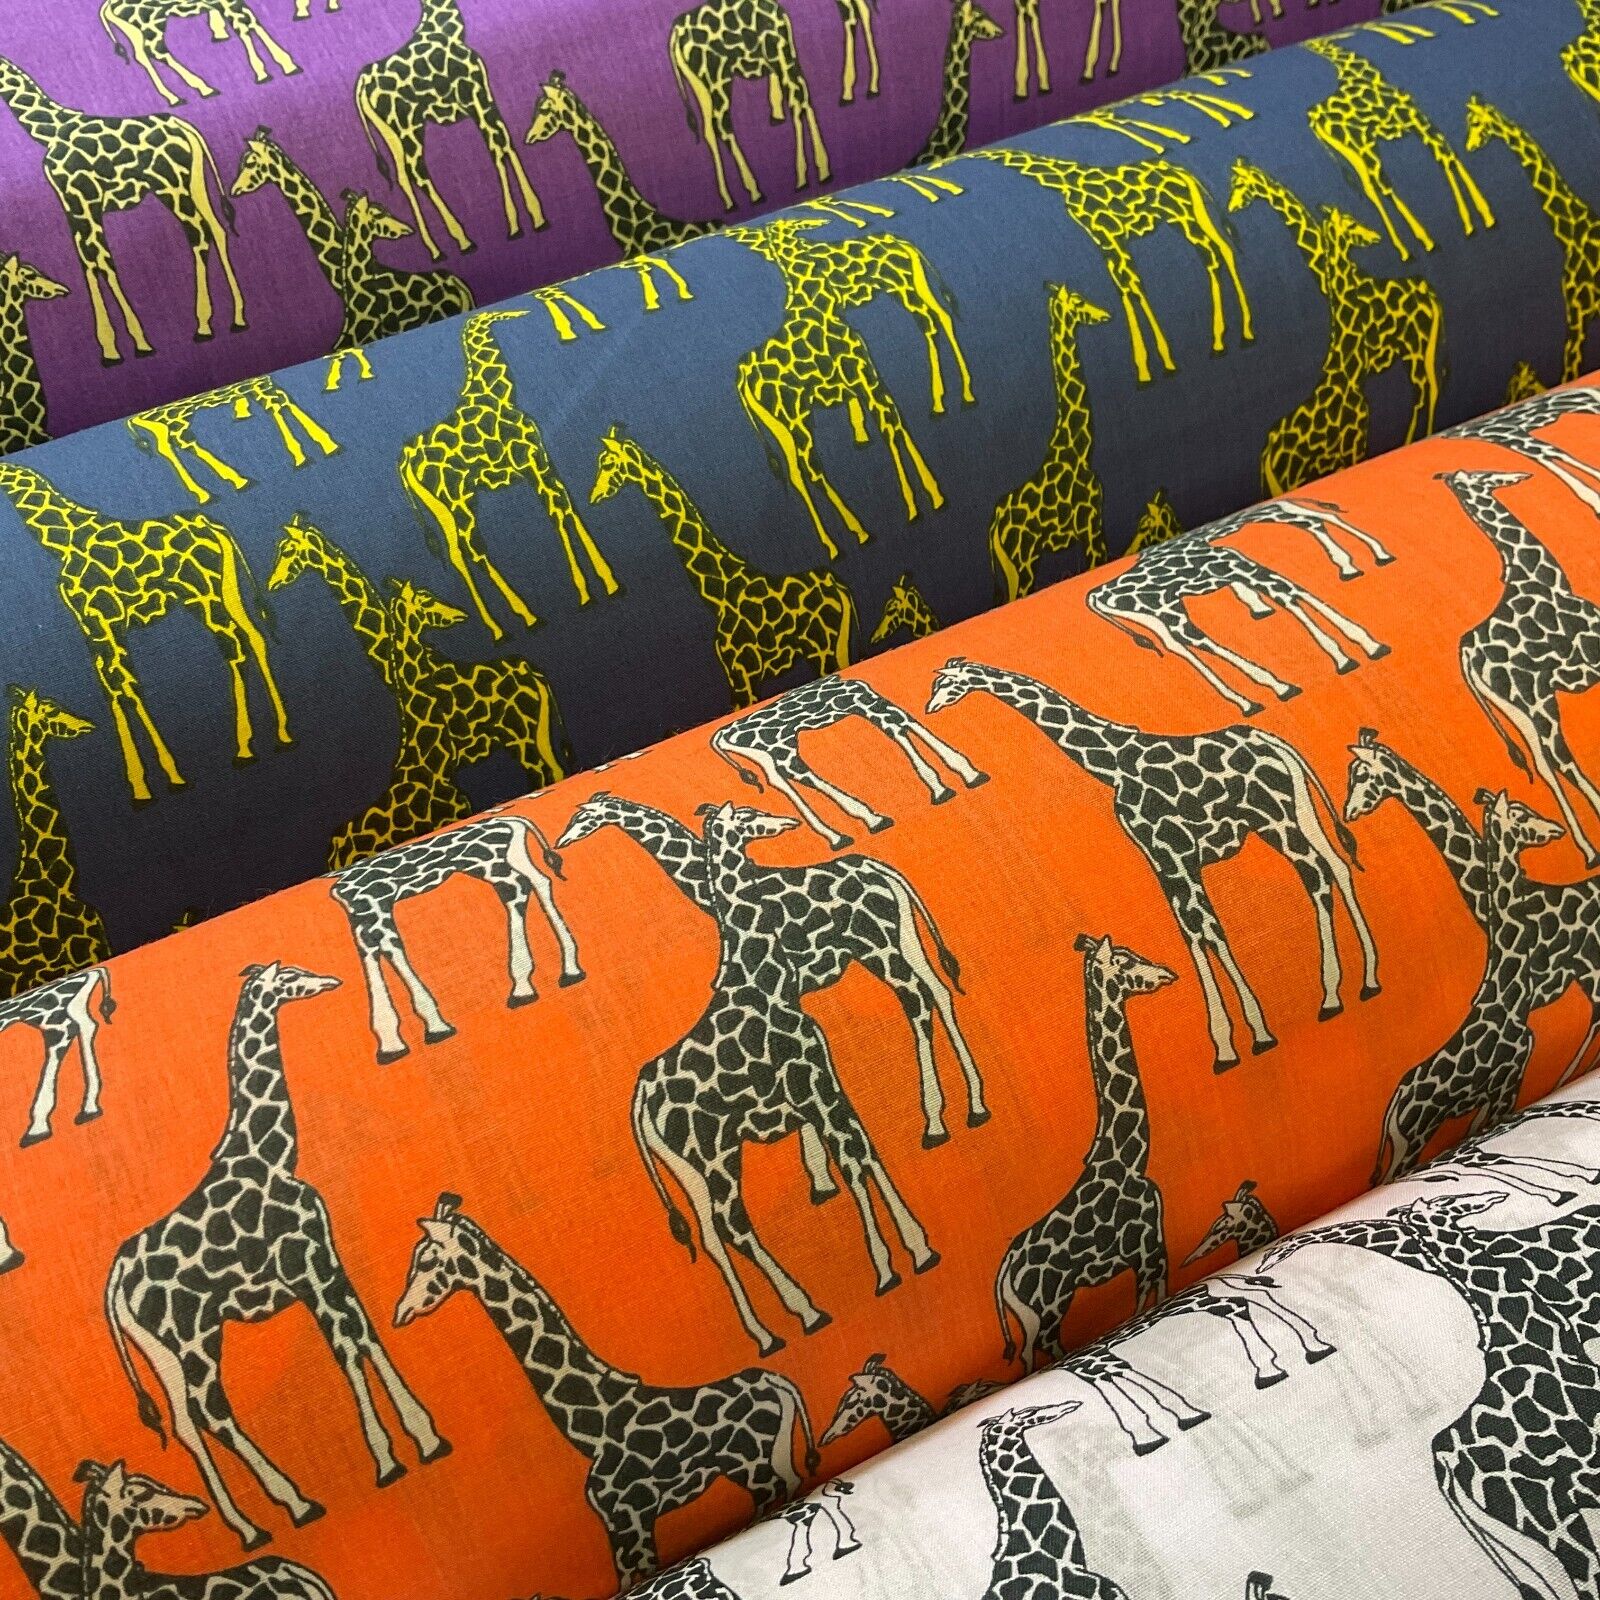 Giraffe Animals bomuld trykt bred M1706 - Midland Textiles